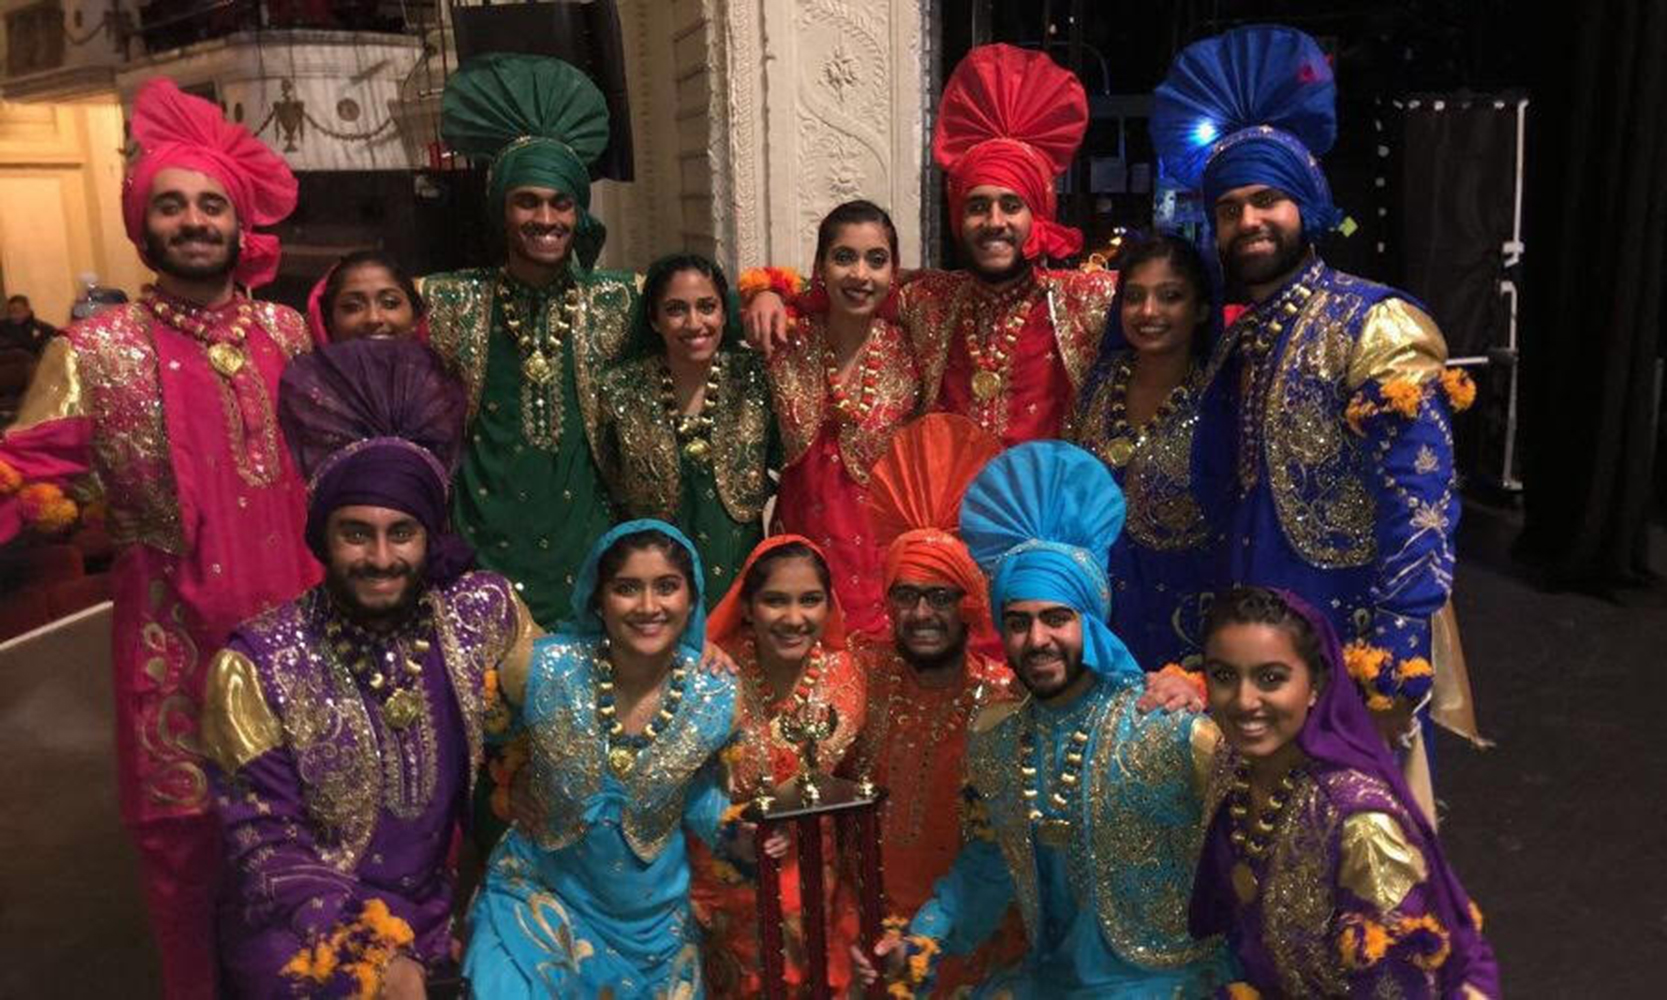 Jasnoor Singh and the U-M Bhangra dance team